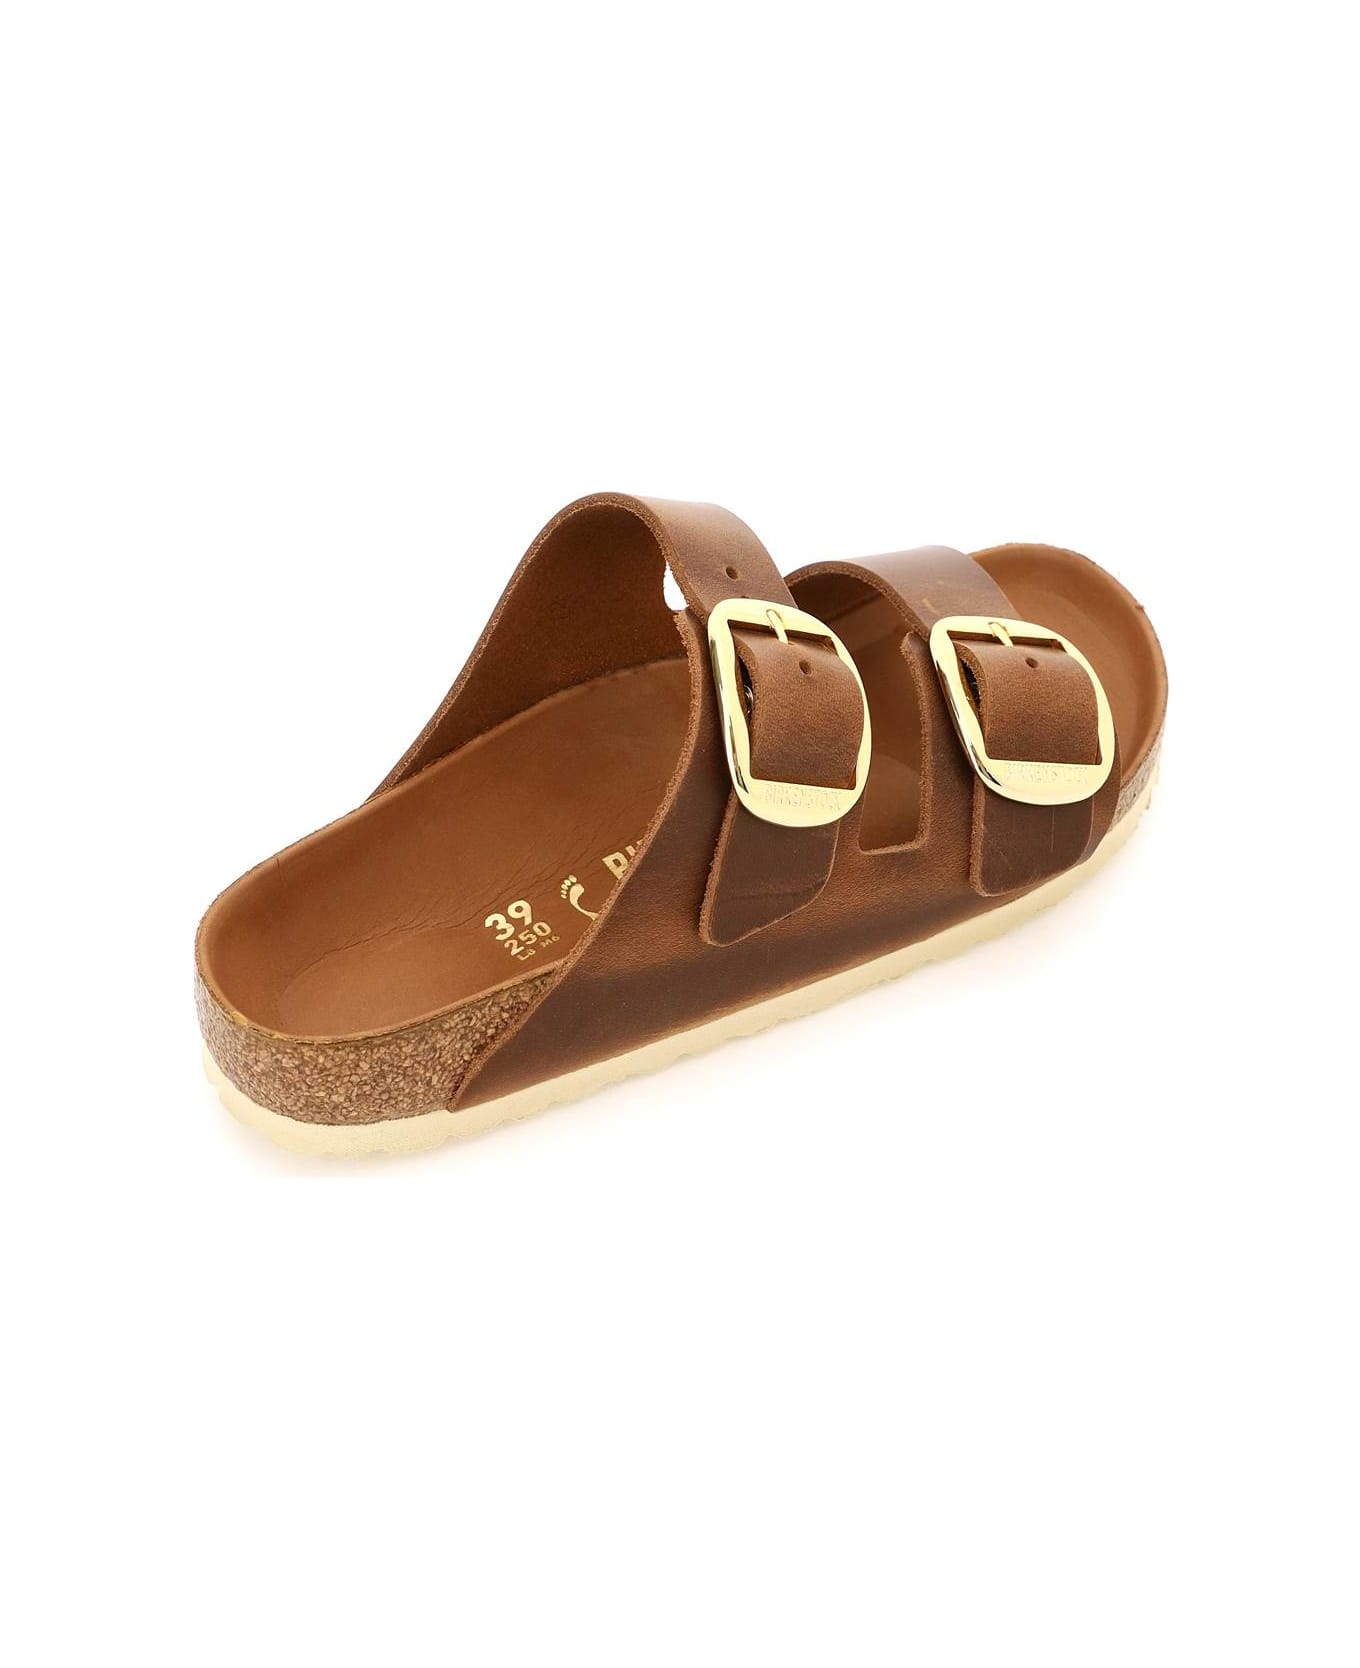 Birkenstock Sandals - Cognac サンダル